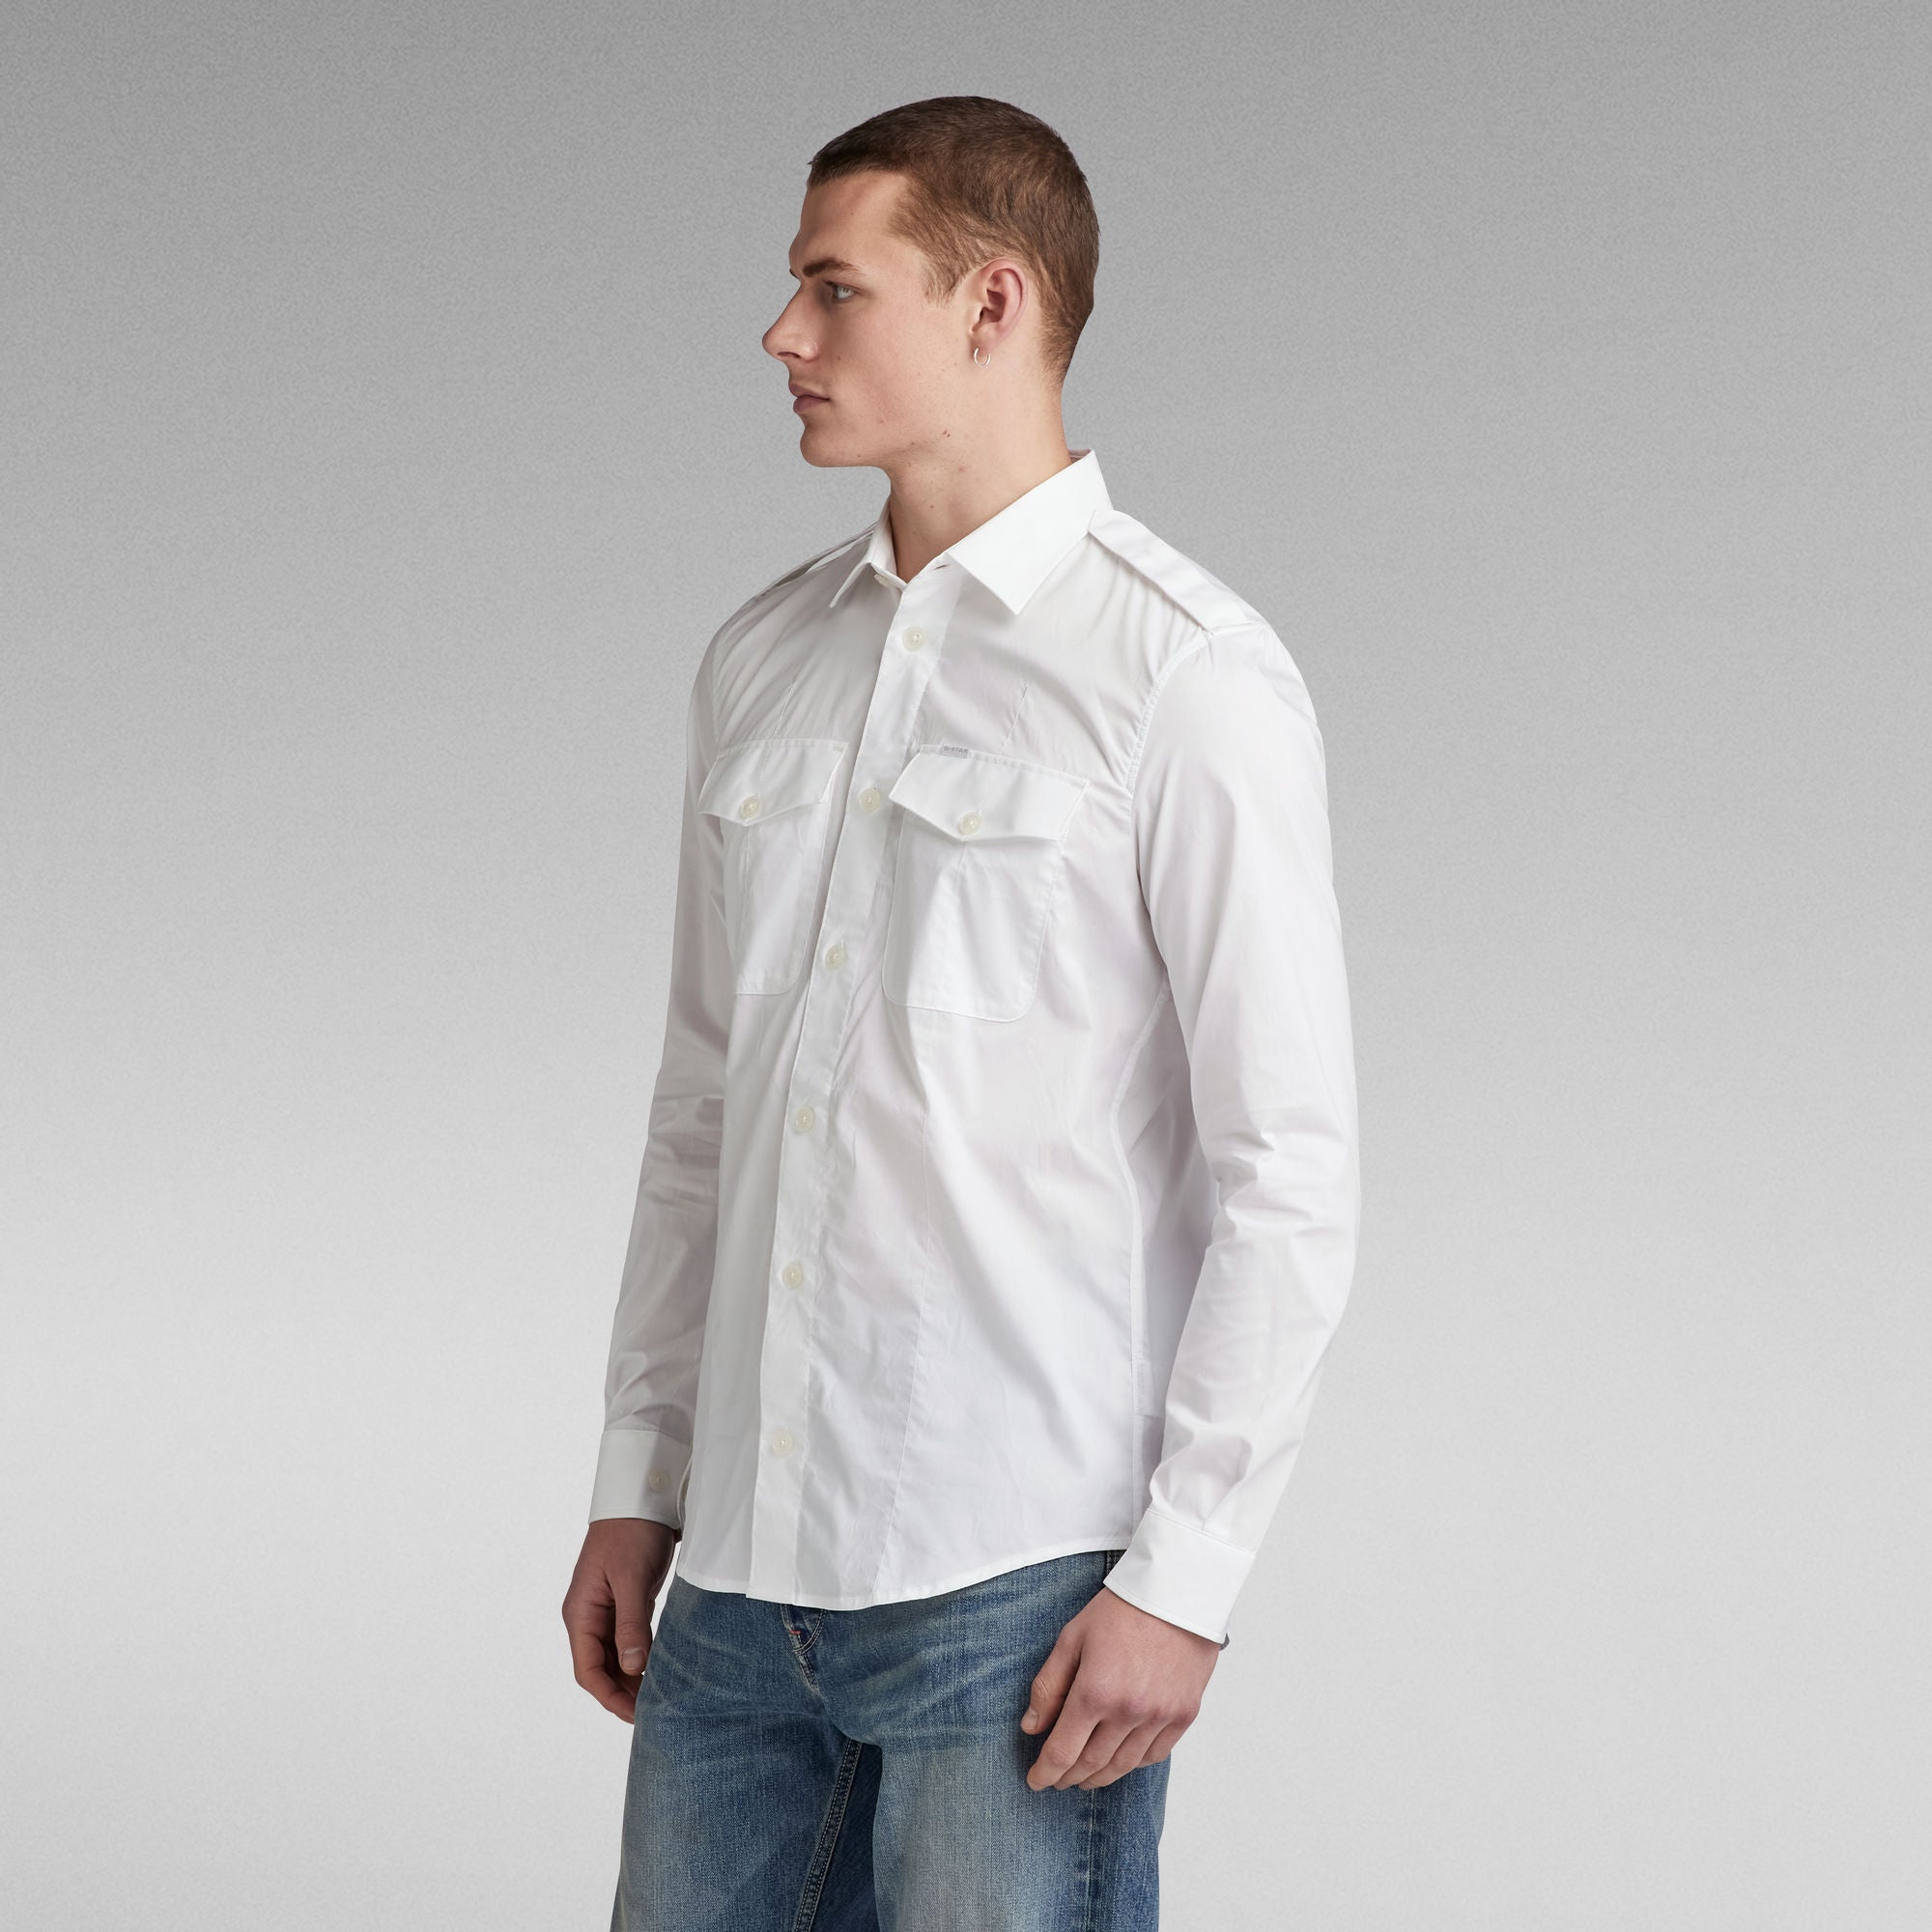 G-Star Raw - Tux Marine Slim LS Shirt - White